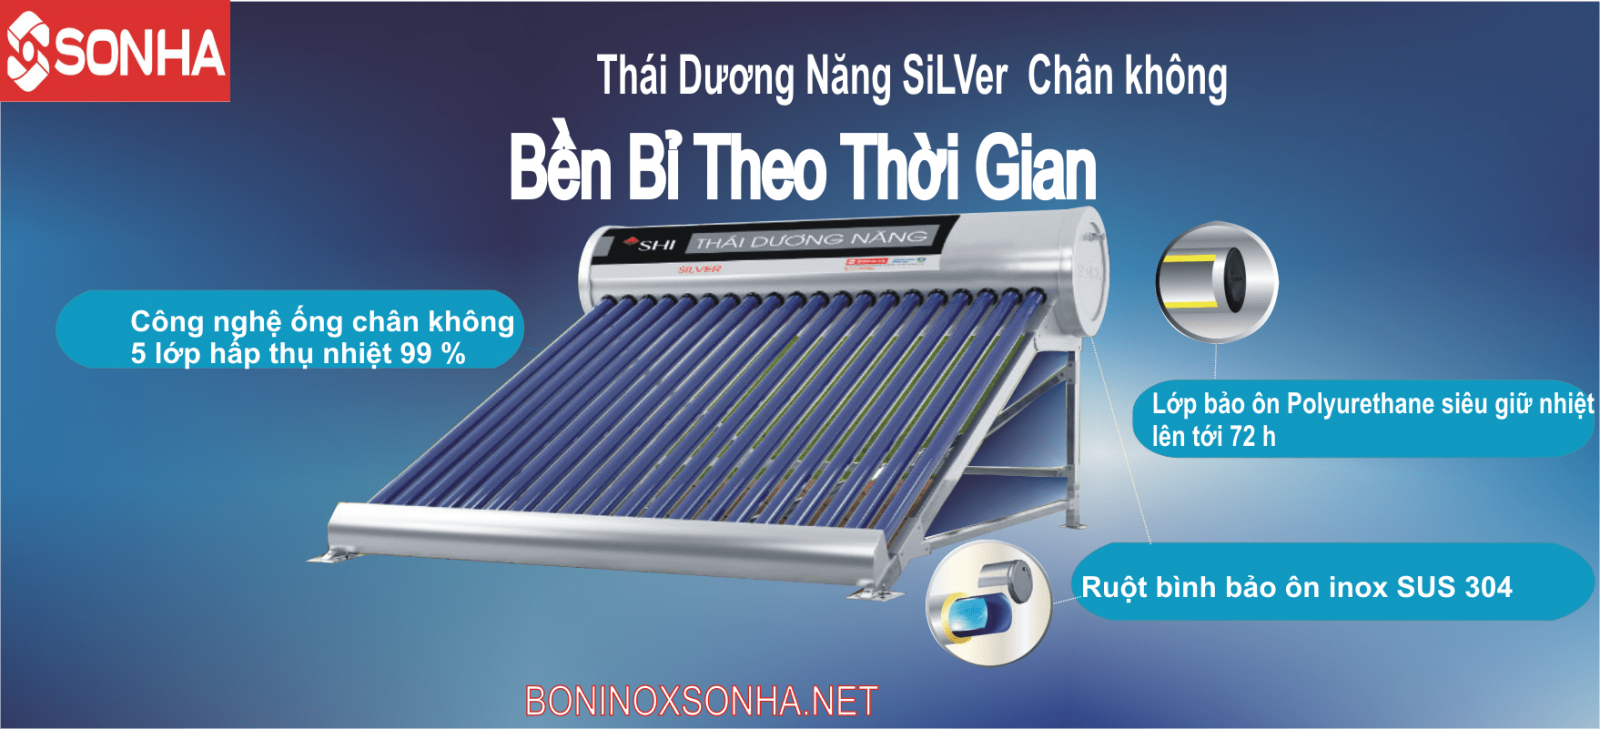 THÁI DƯƠNG NĂNG SILVER 58 - 160 Chân không Sơn Hà